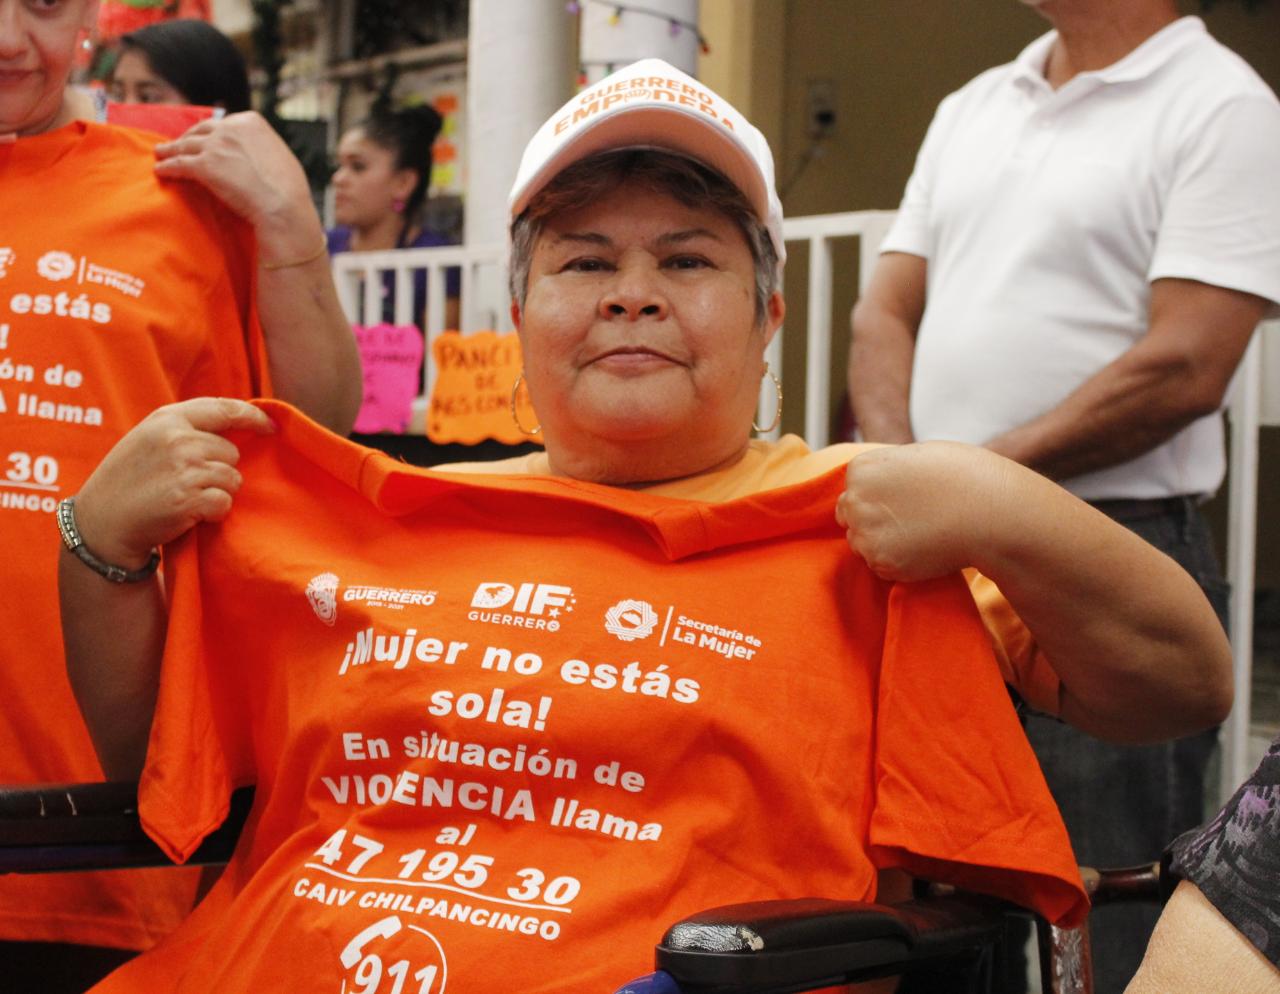 Suma Semujer a locatarias de mercados en los trabajos de la Alerta de Género en Guerrero